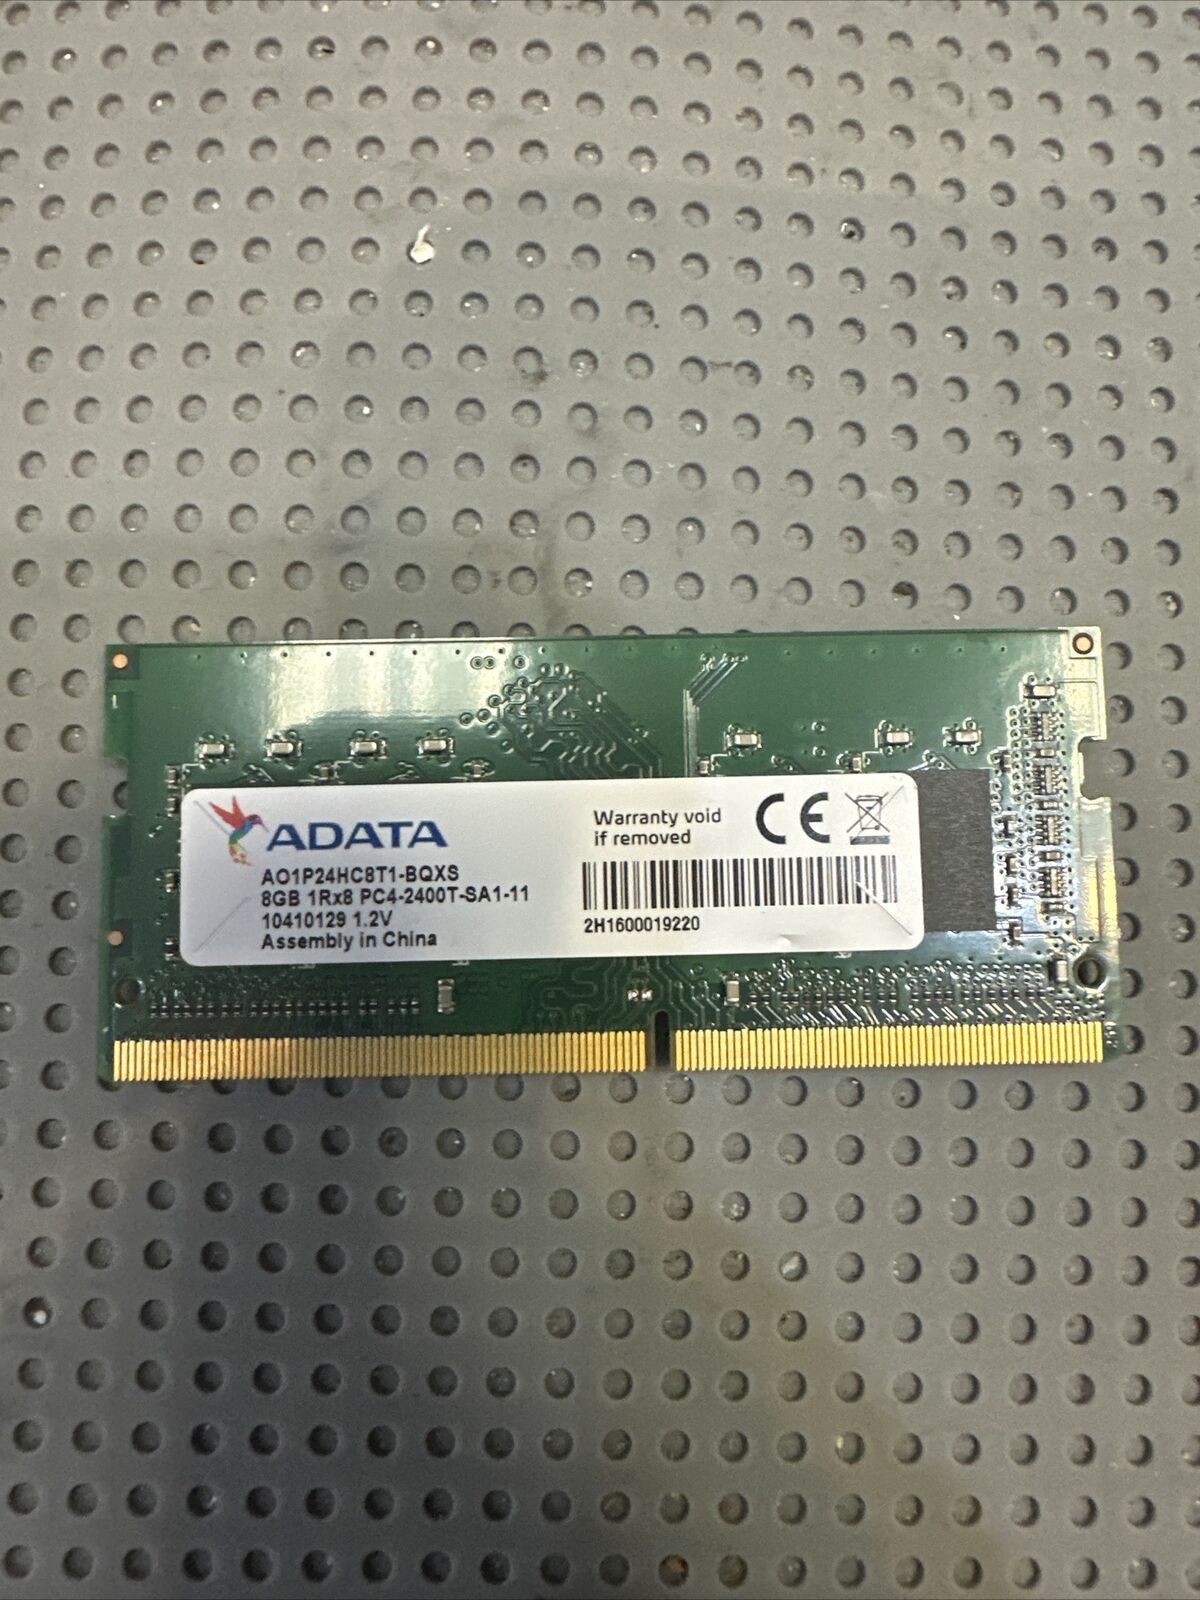 USED ADATA AO1P24HC8T1-BQXS 8 GB (1x8GB) PC4-2400T Laptop Memory Ram 1Rx8